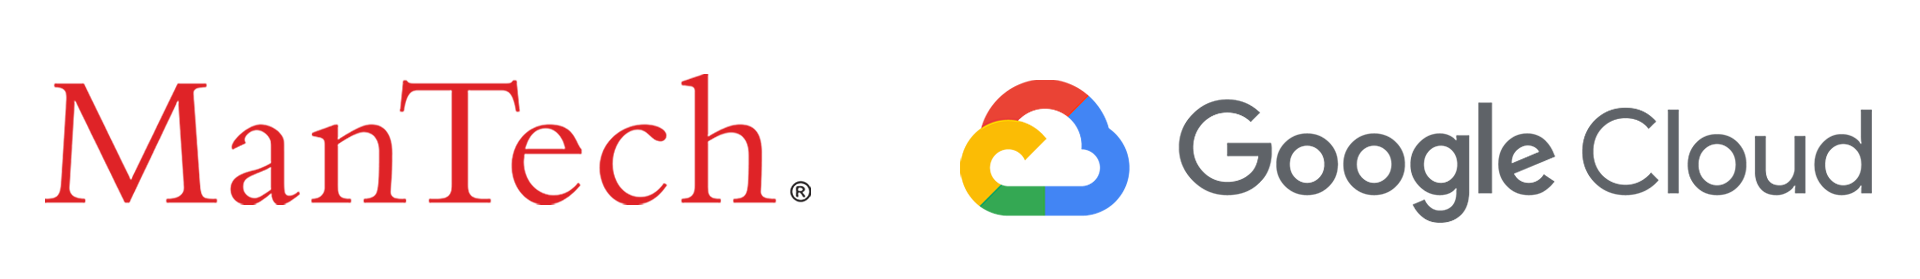 Google Cloud Partnership logo